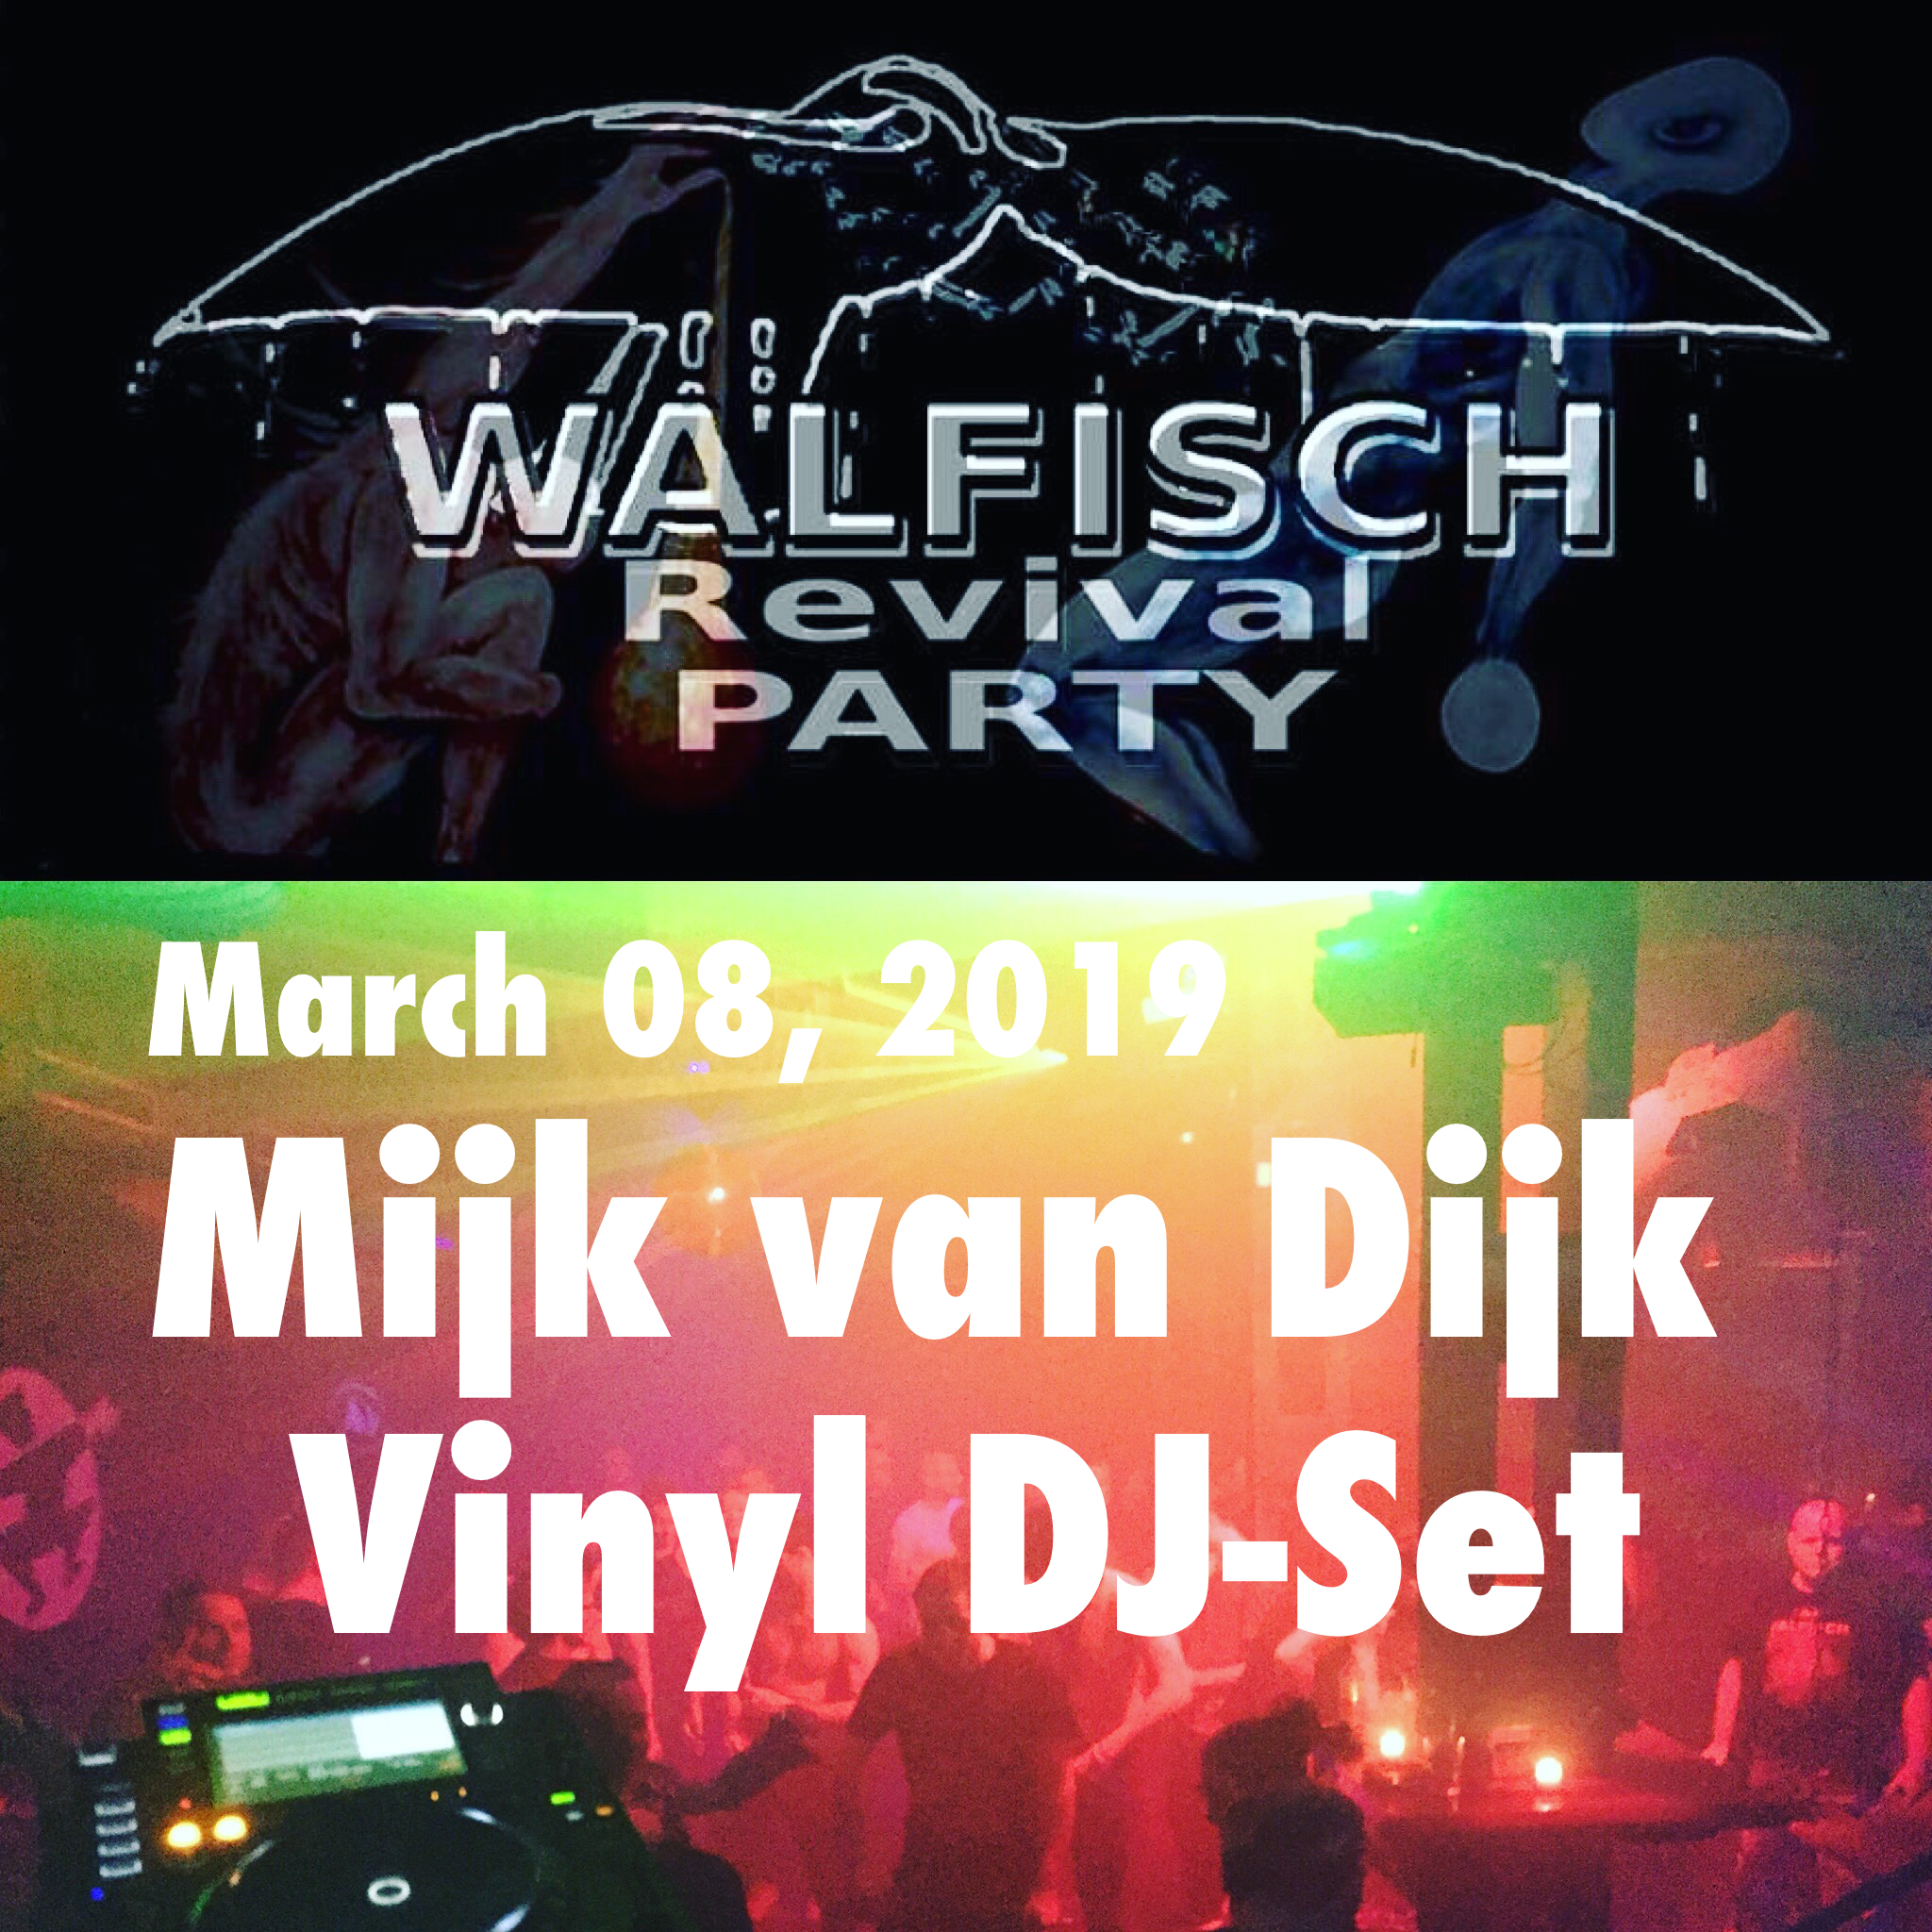 Mijk van Dijk DJ Set at Walfisch Revival Party Berlin, 2019-03-08